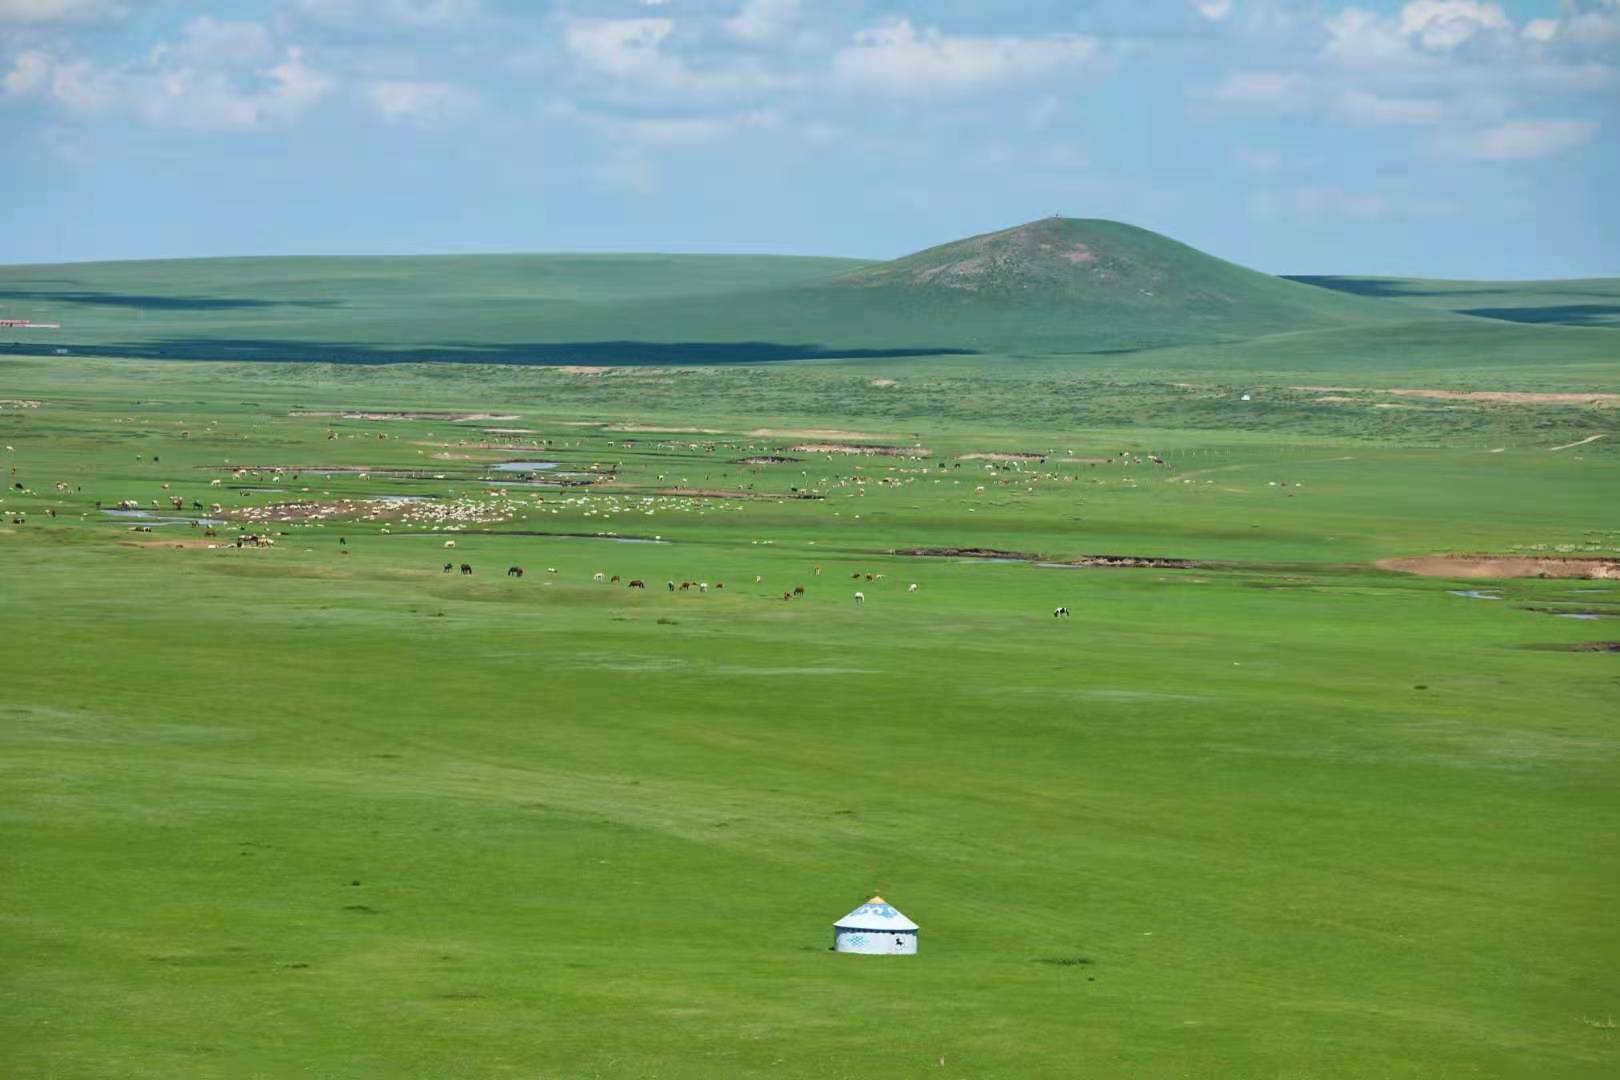 锡林郭勒大草原攻略:世界上最美的草原,最好吃的羊肉